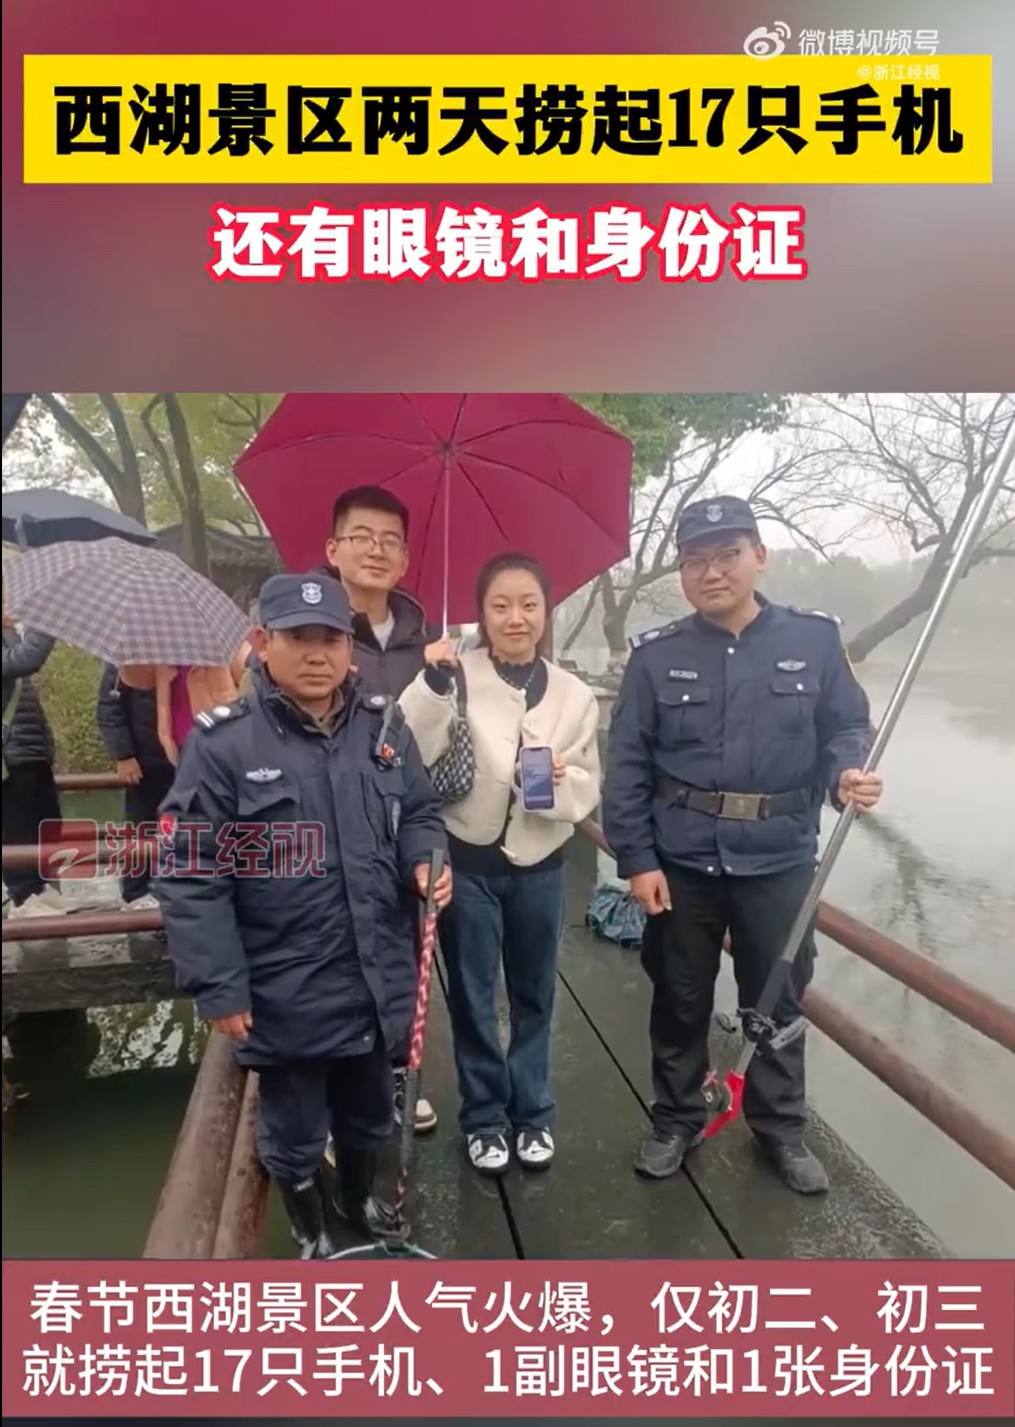 杭州西湖两天捞出17只手机 “打捞神器”再显神通2